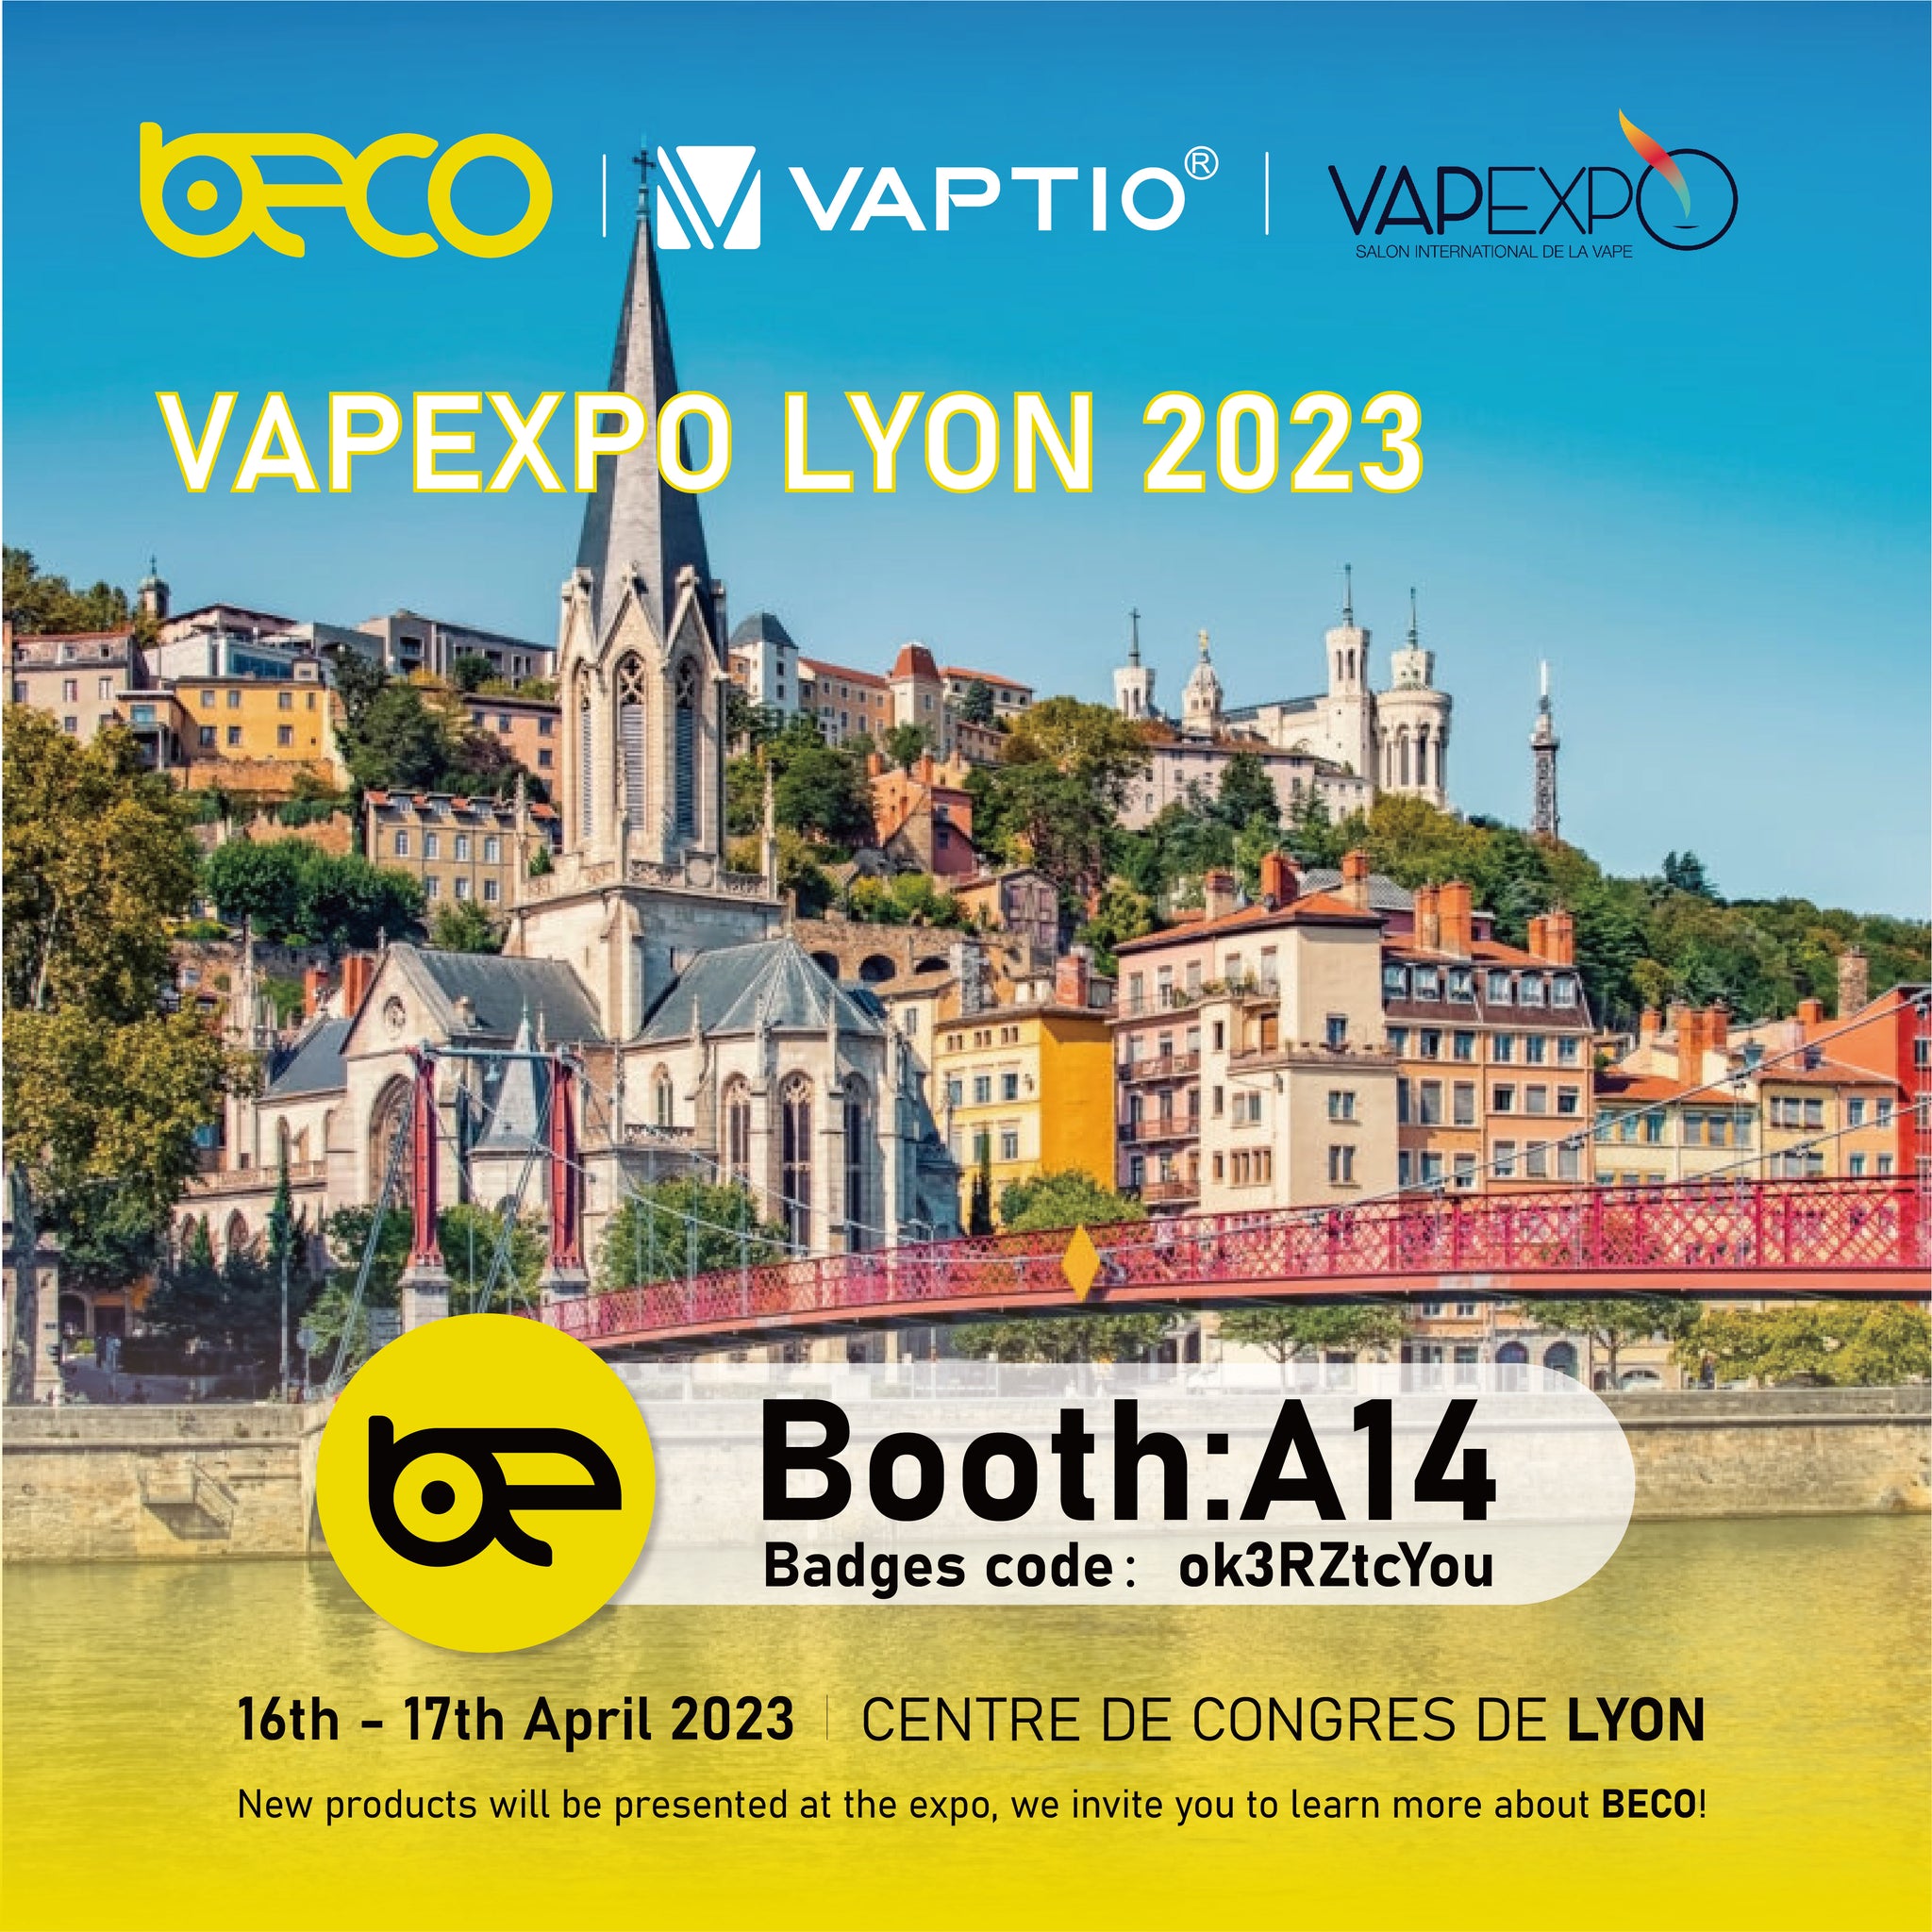 De nouveaux produits Beco seront dévoilés pour la première fois à la Vapexpo de Lyon, France les 16 et 17 avril